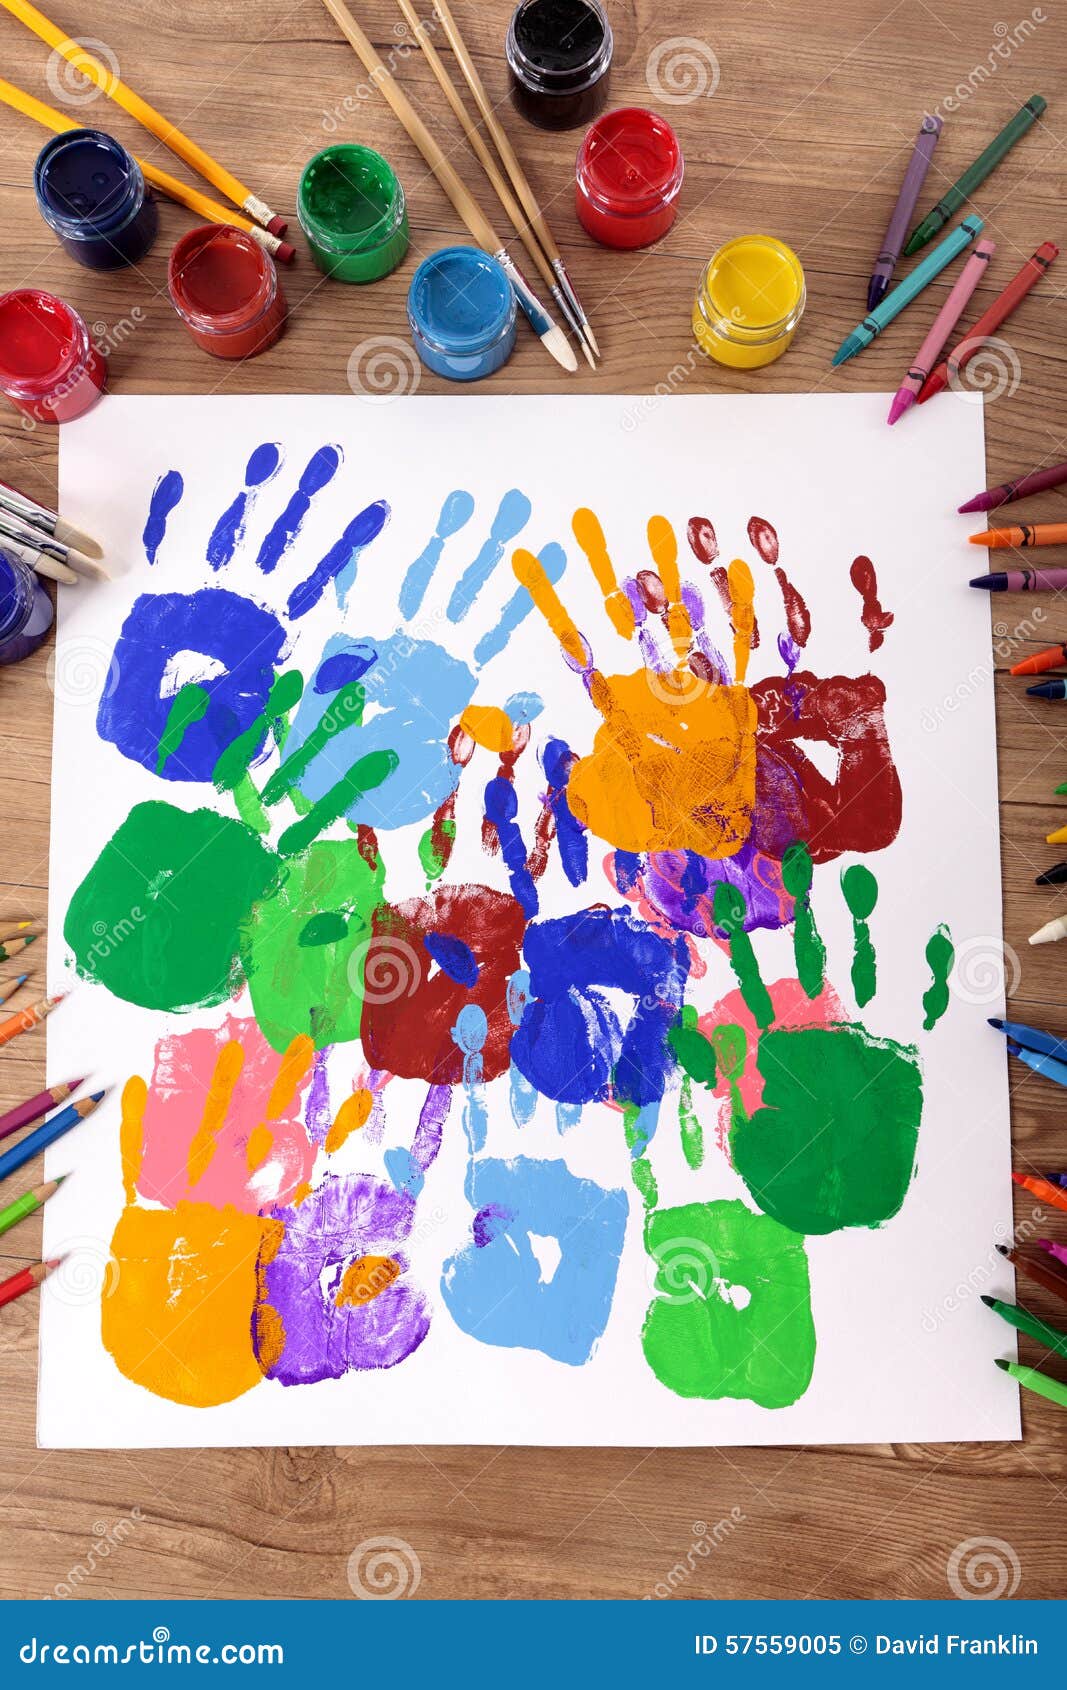 Children Handprints And Art Equipment, Art And Craft Class 